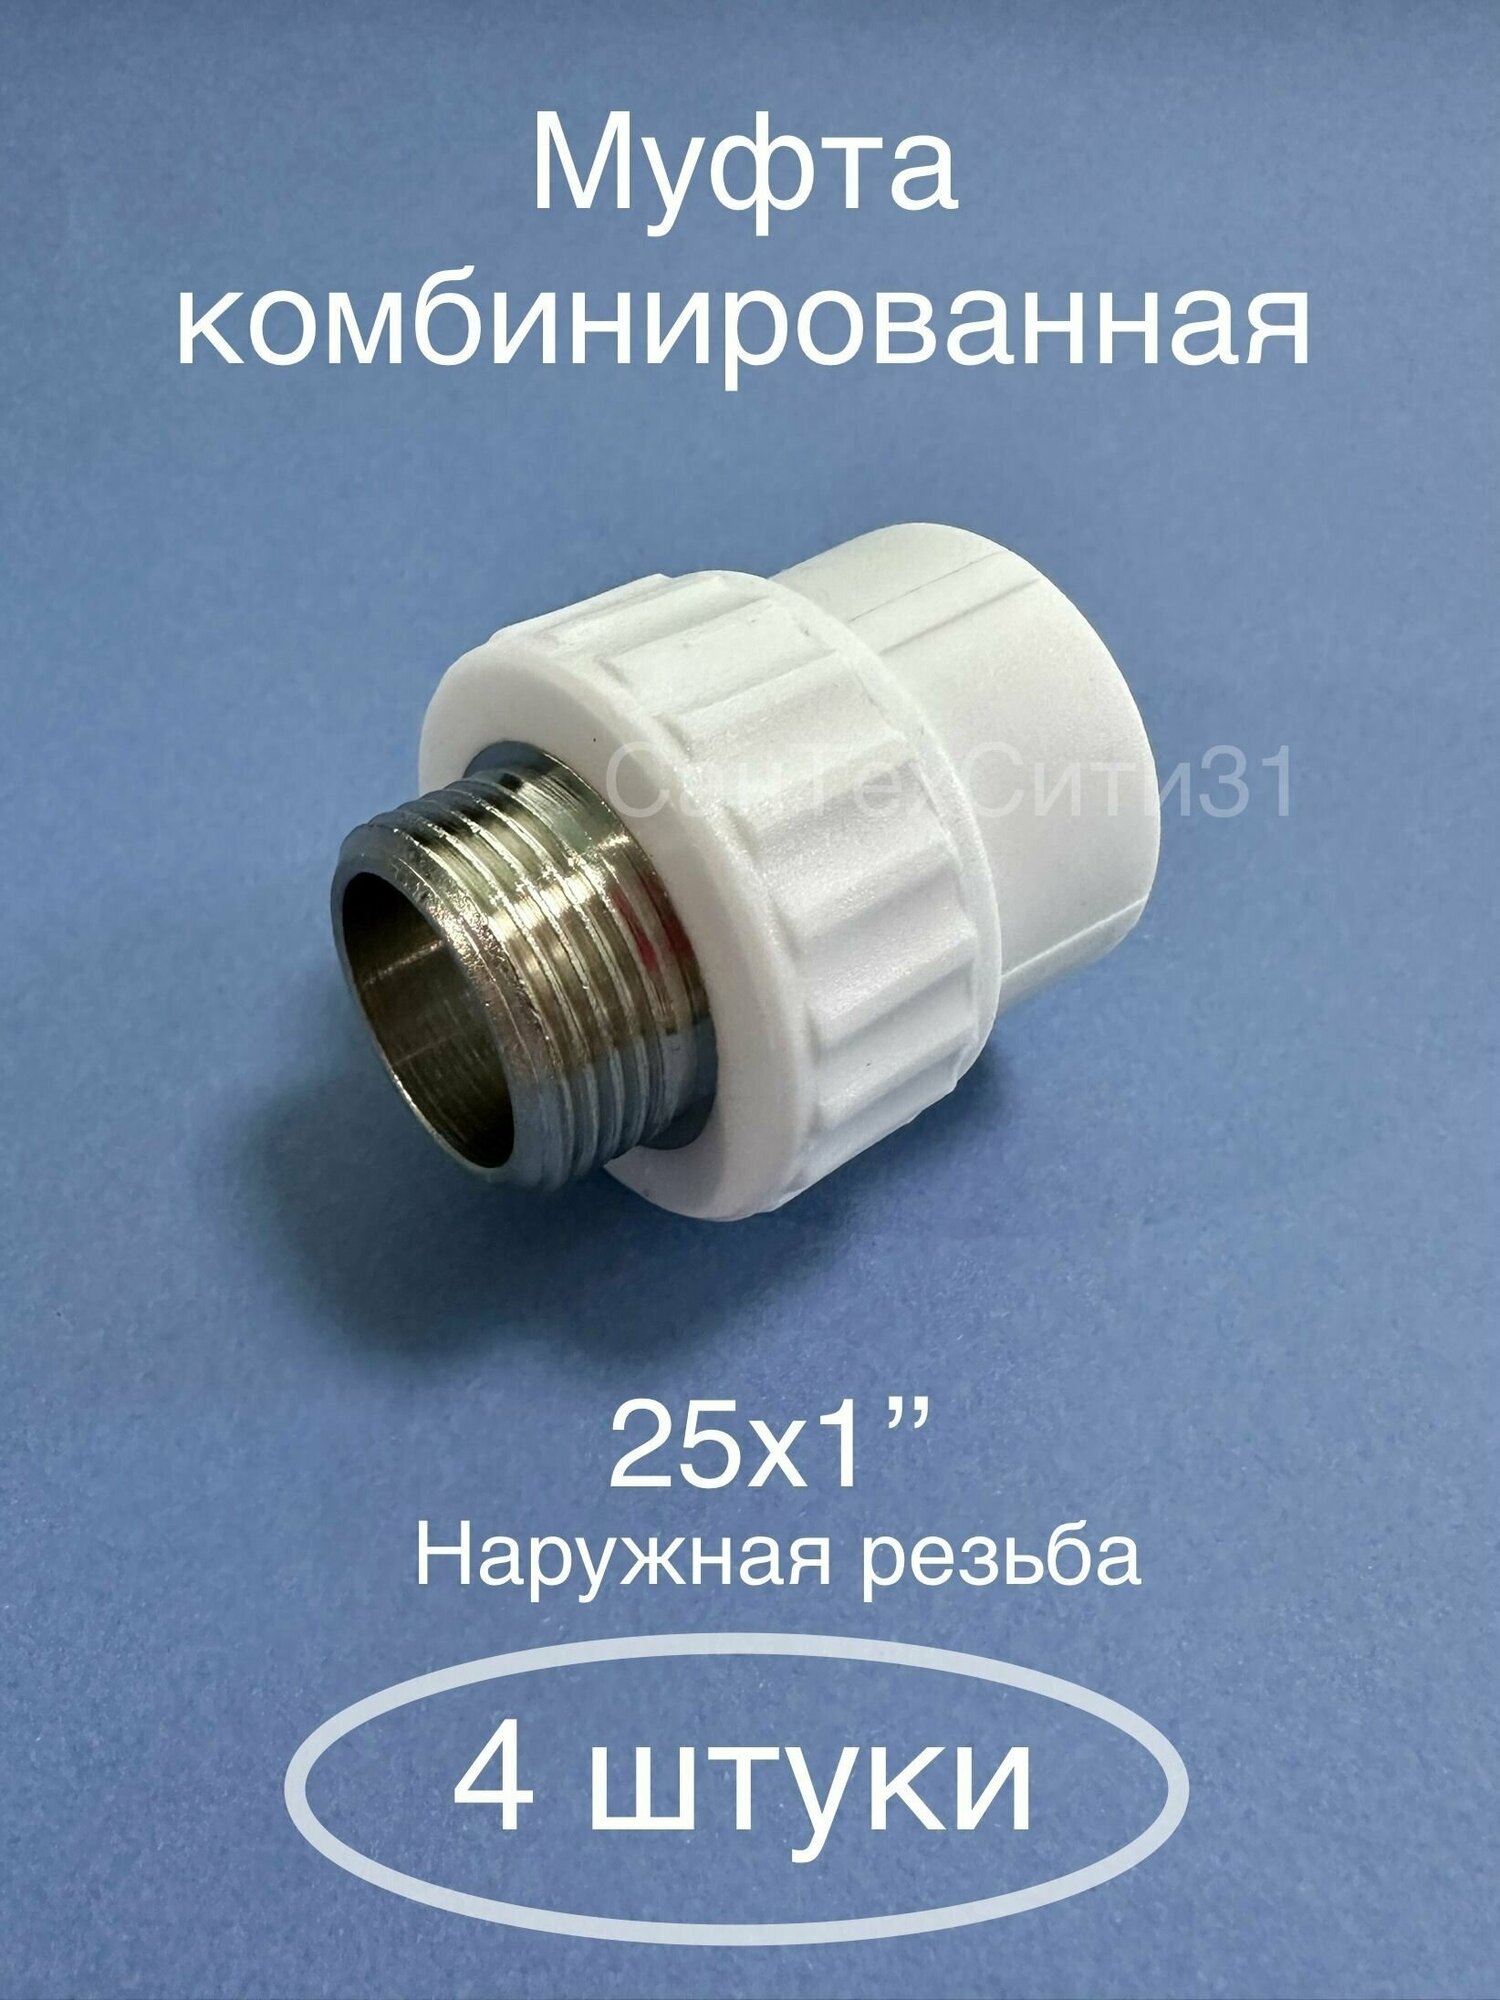 Муфта комбинированная переходная полипропиленовая наружная резьба (25-1) 25 мм х 1  Valfex Россия (4 штуки)